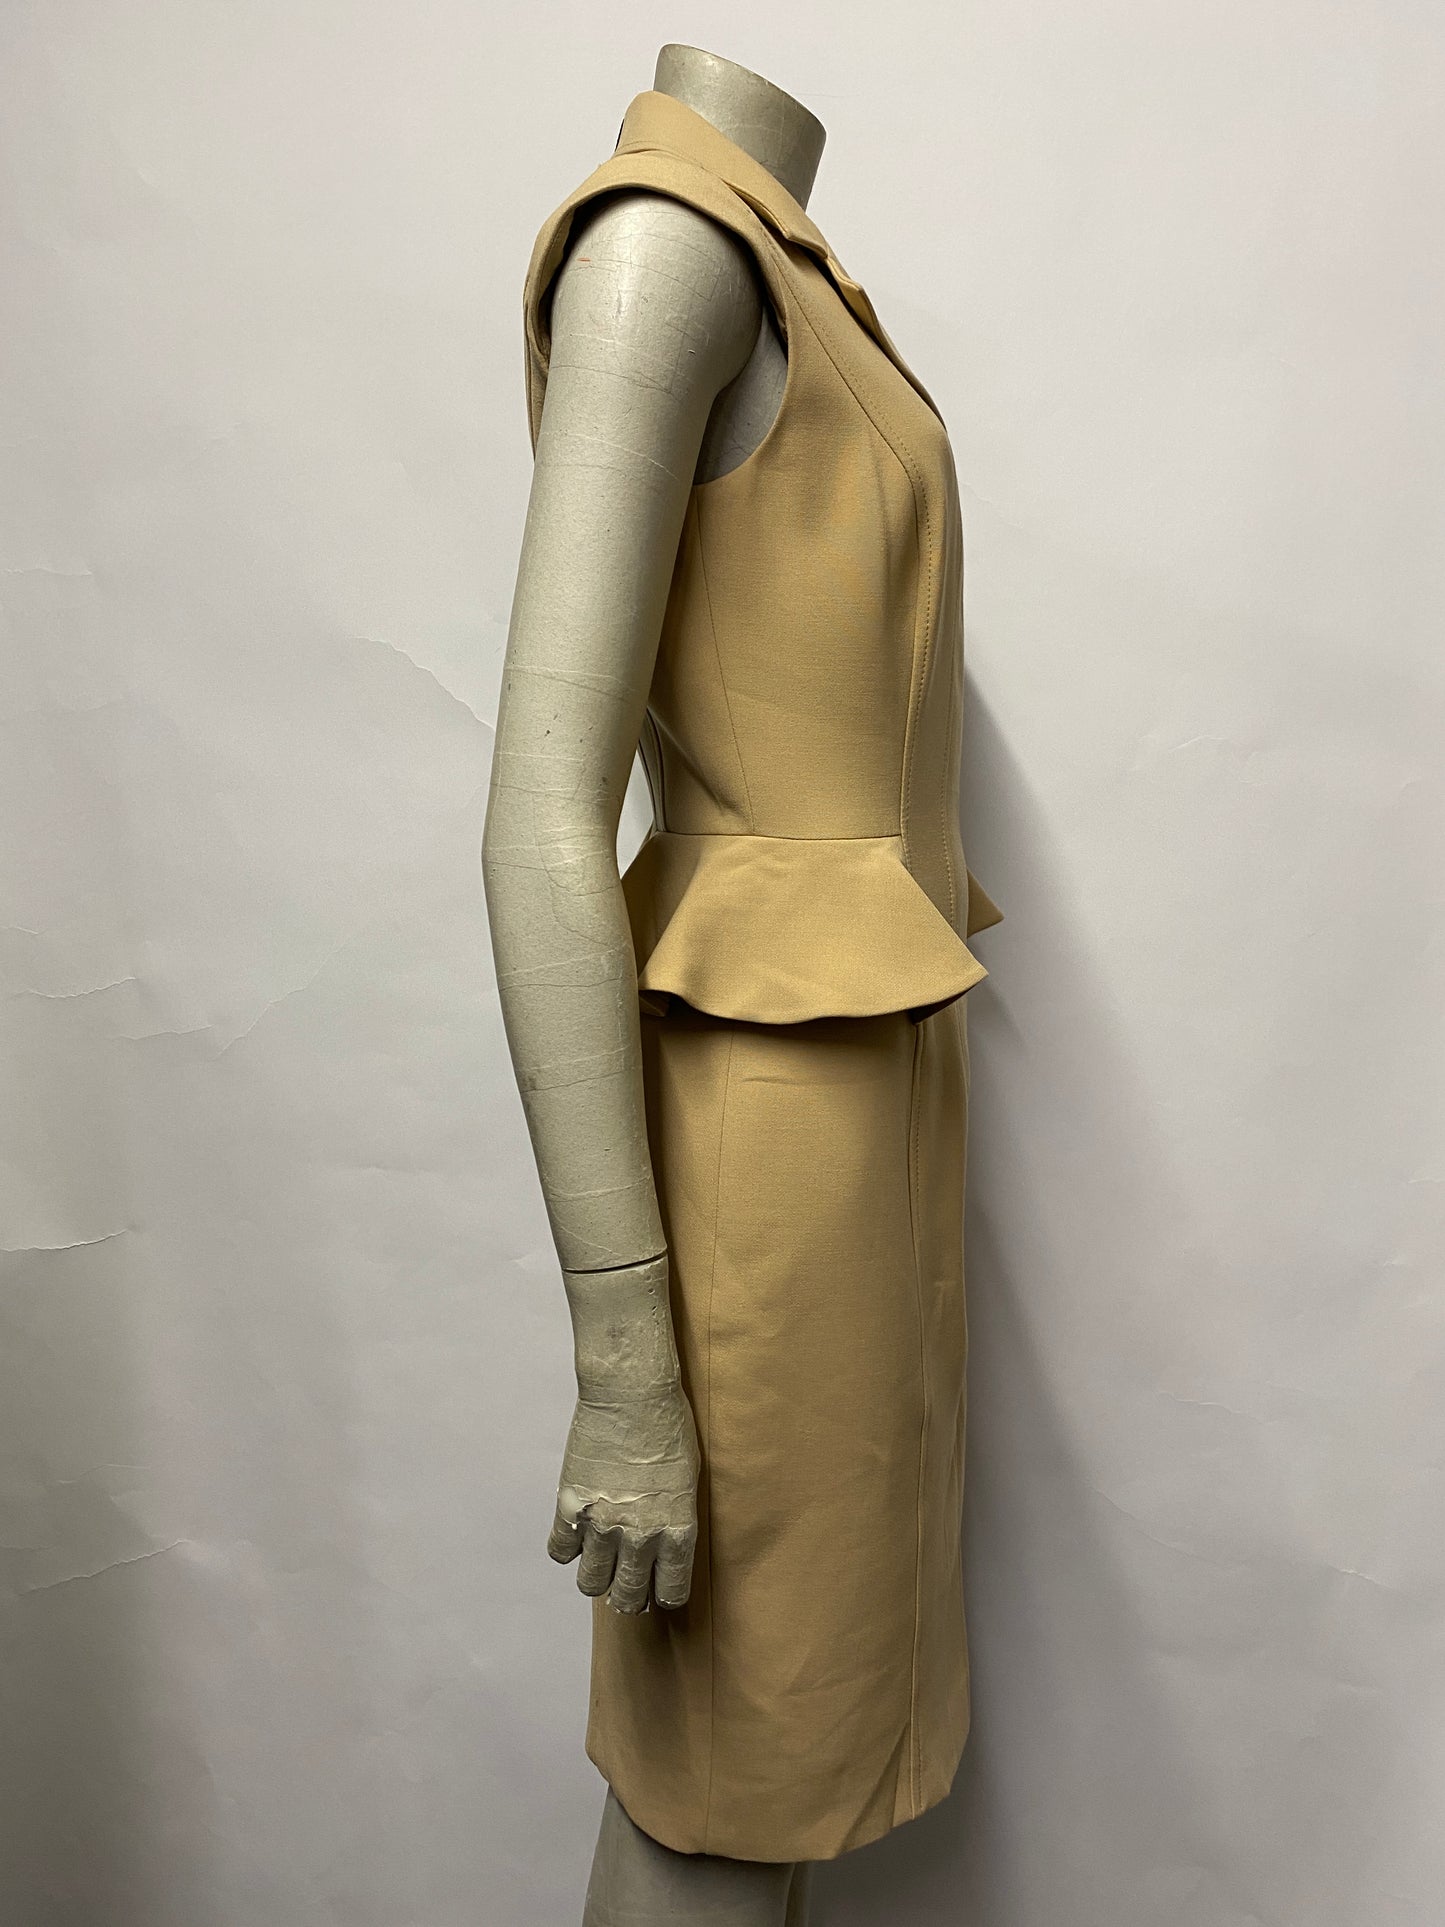 Karen Millen Camel Sleeveless Tailored Zip Dress 10 BNWT